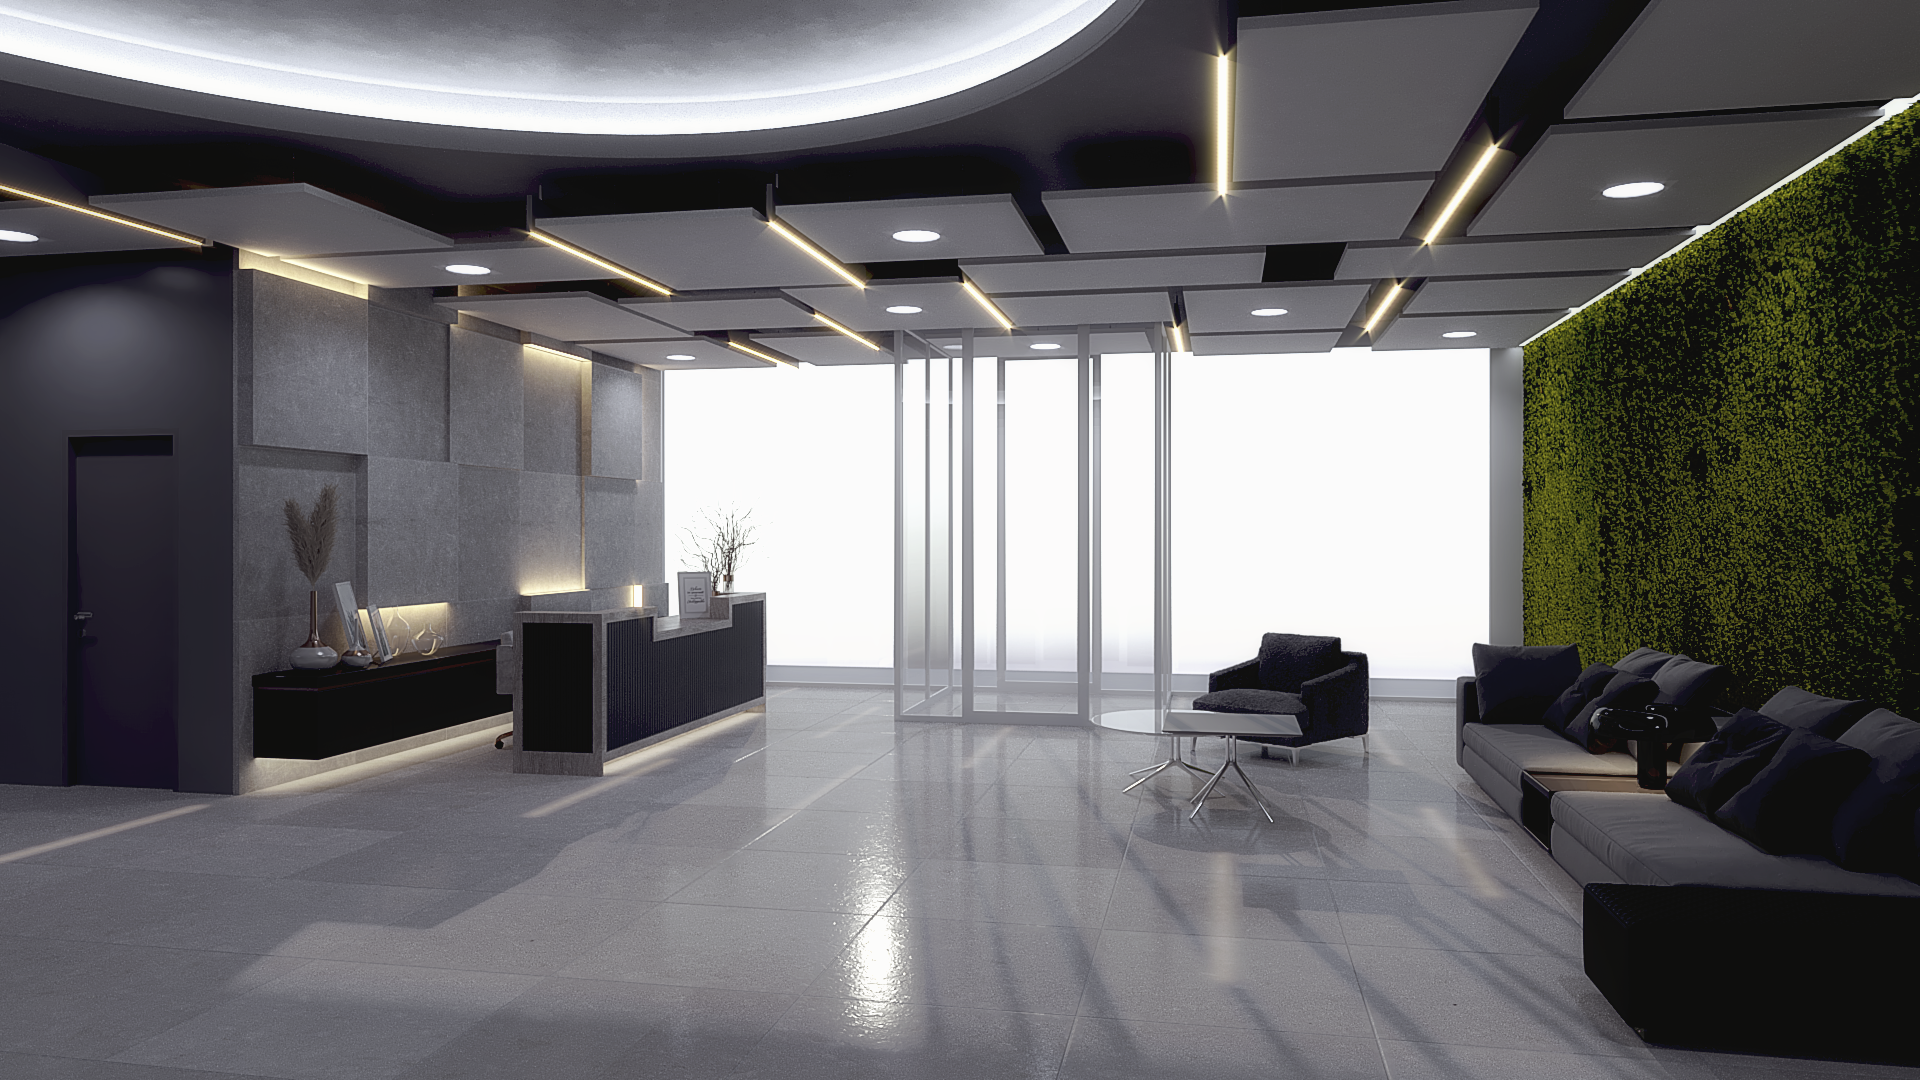 Ideazione e rendering 3D per arredamenti uffici aziendali